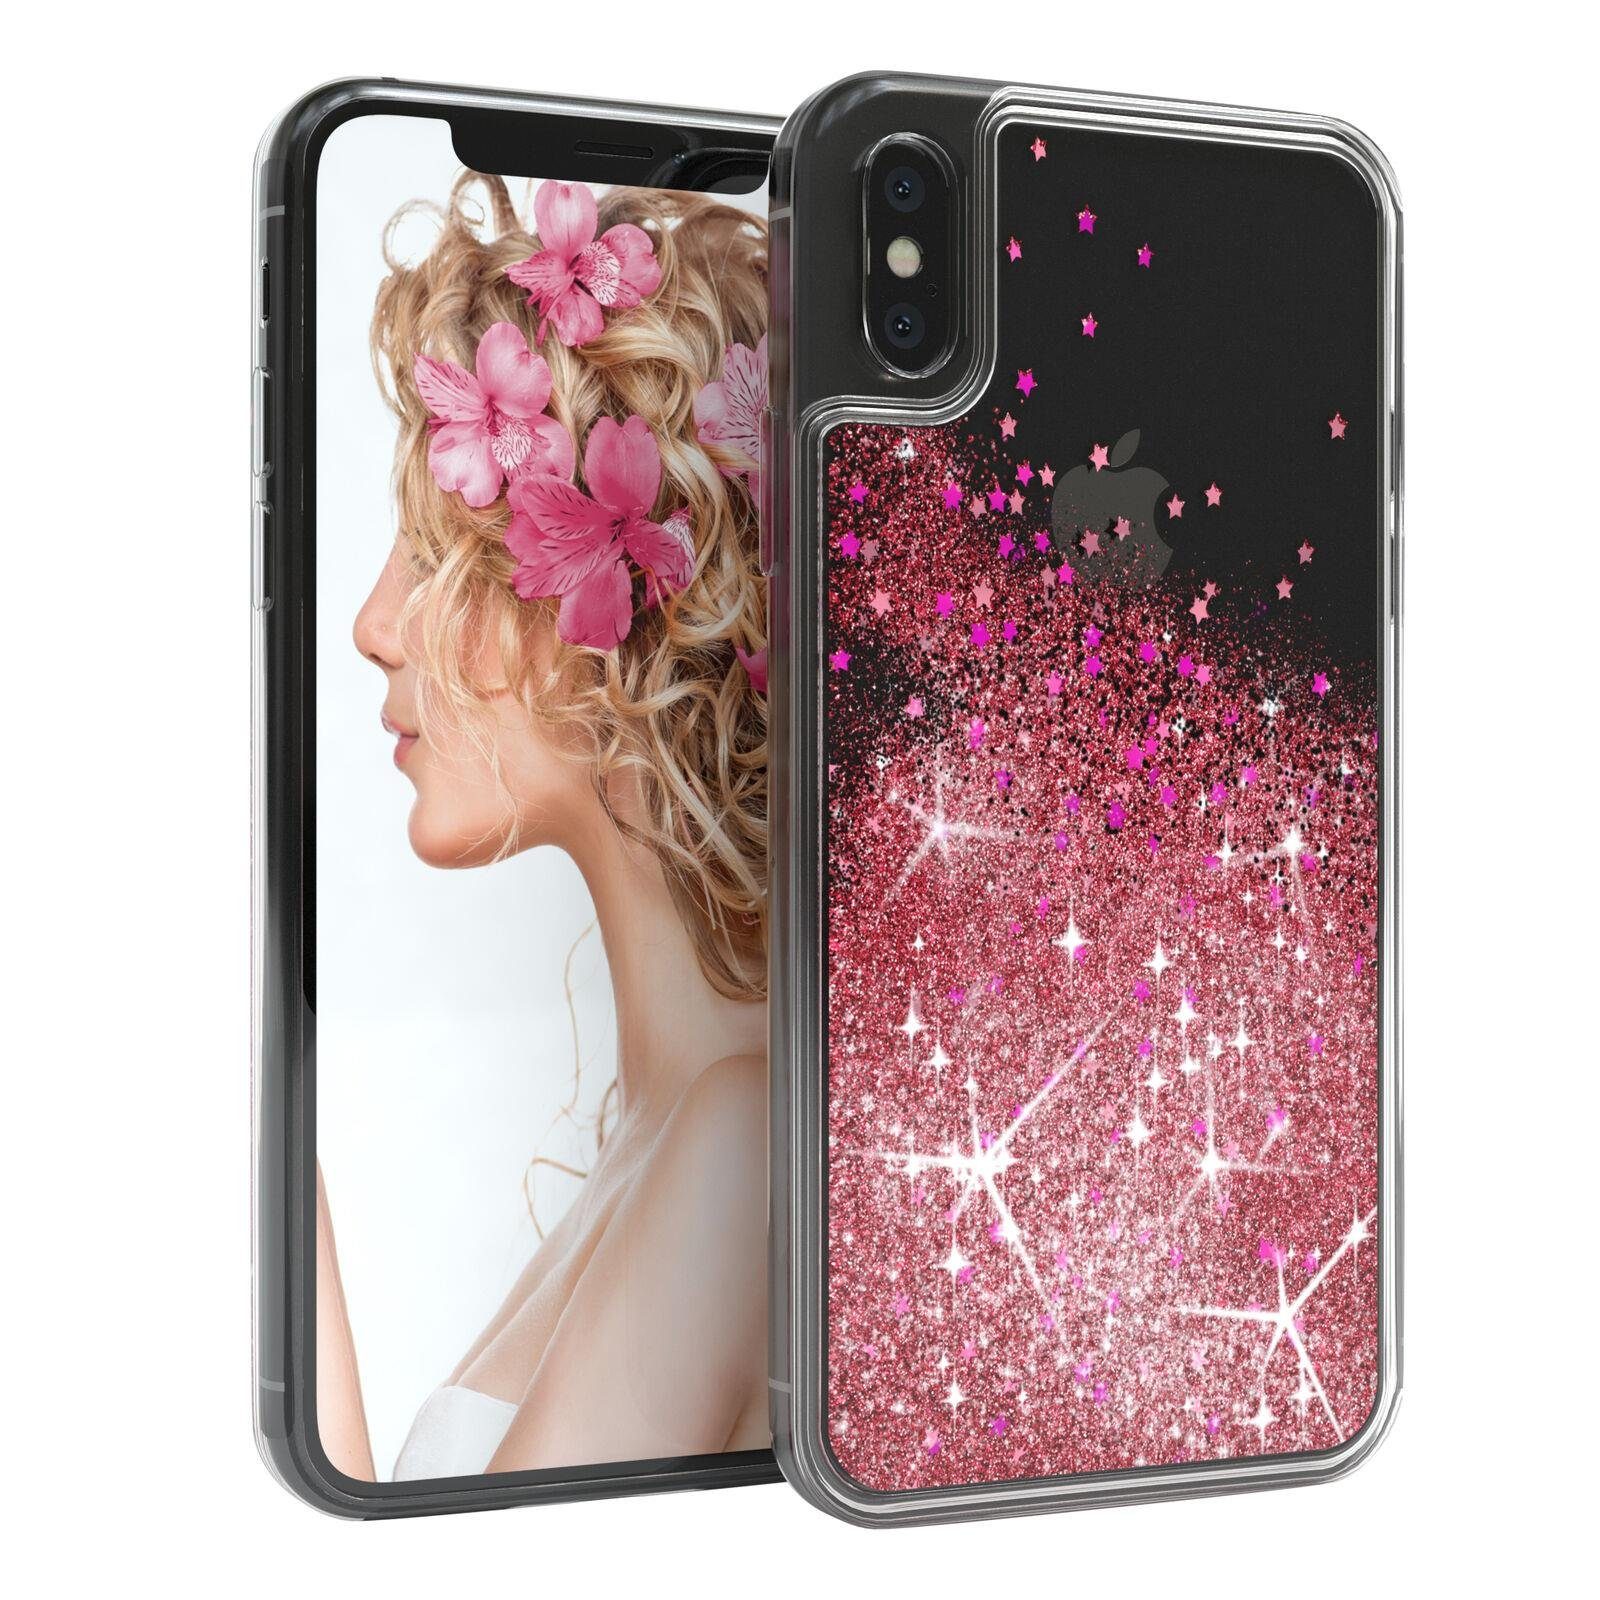 EAZY CASE Handyhülle Liquid Glittery Case für iPhone X / iPhone XS 5,8 Zoll, Hülle Glitzer Flüssig durchsichtig Phone Case stoßfestes Etui Rosa